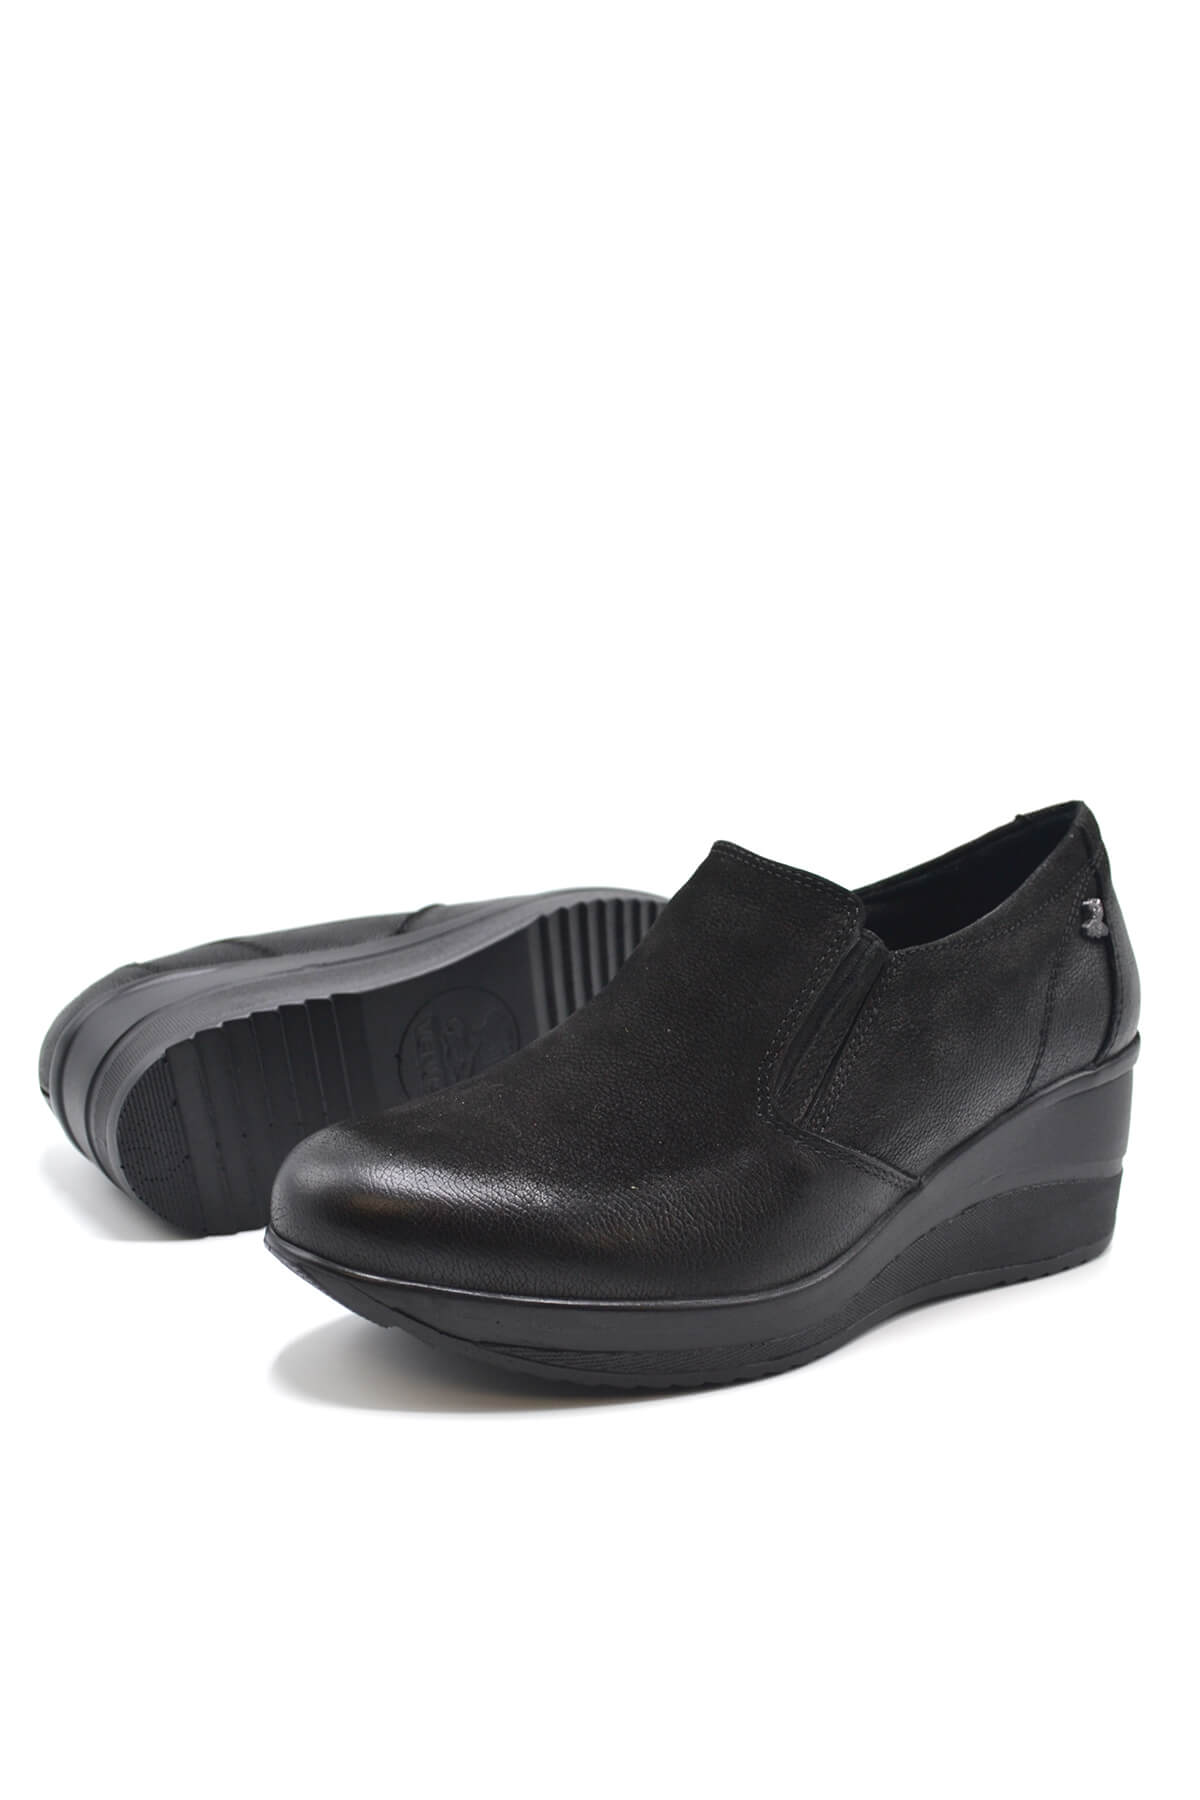 Kadın Dolgu Topuk Deri Ayakkabı Siyah 2111501K - Thumbnail